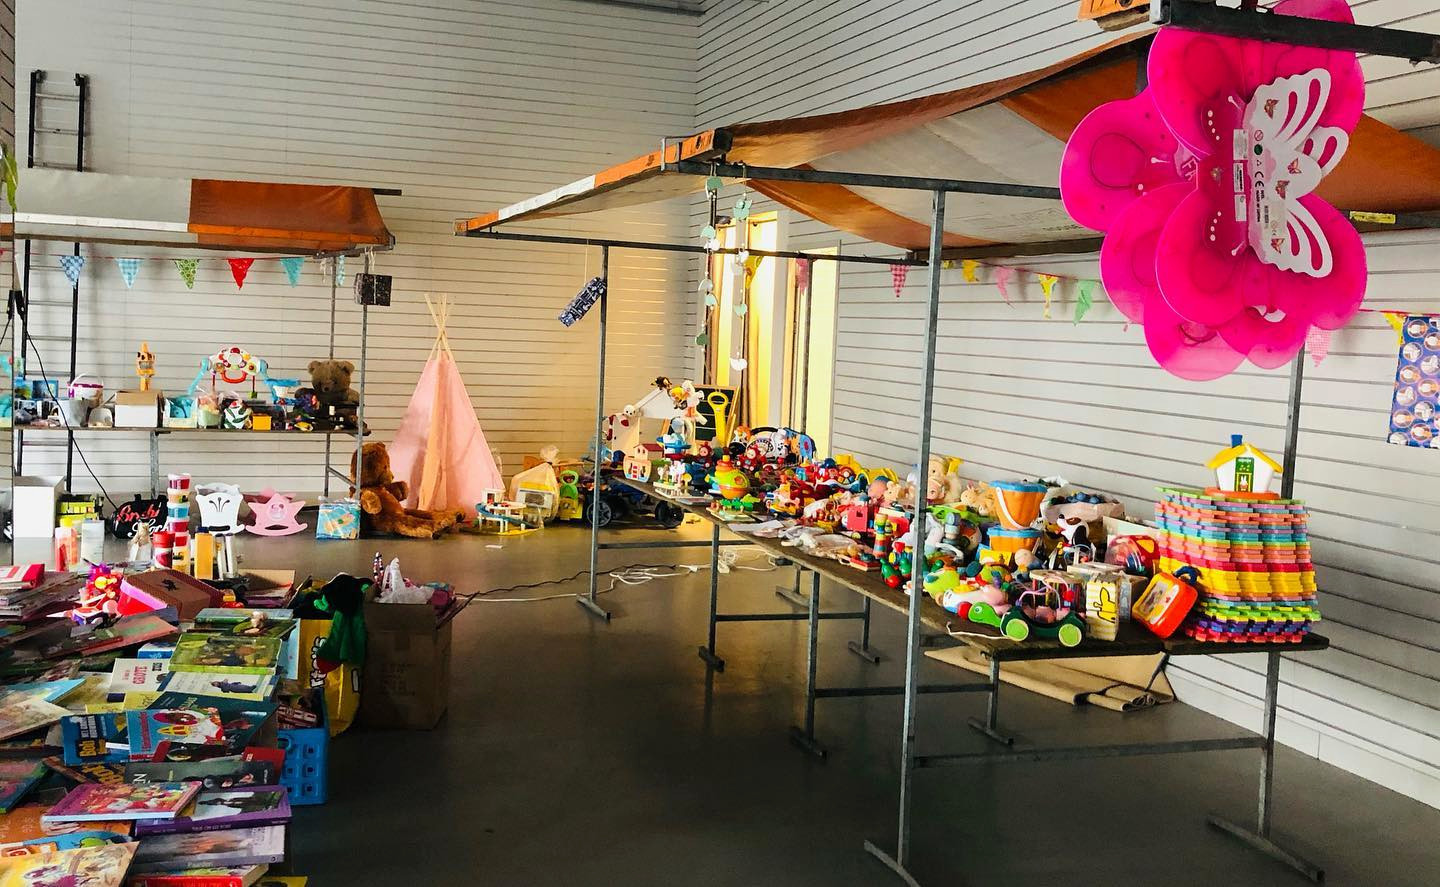 Donderdag, vrijdag en zaterdag houdt Quiet Roosendaal een speelgoedmarkt voor het goede doel.